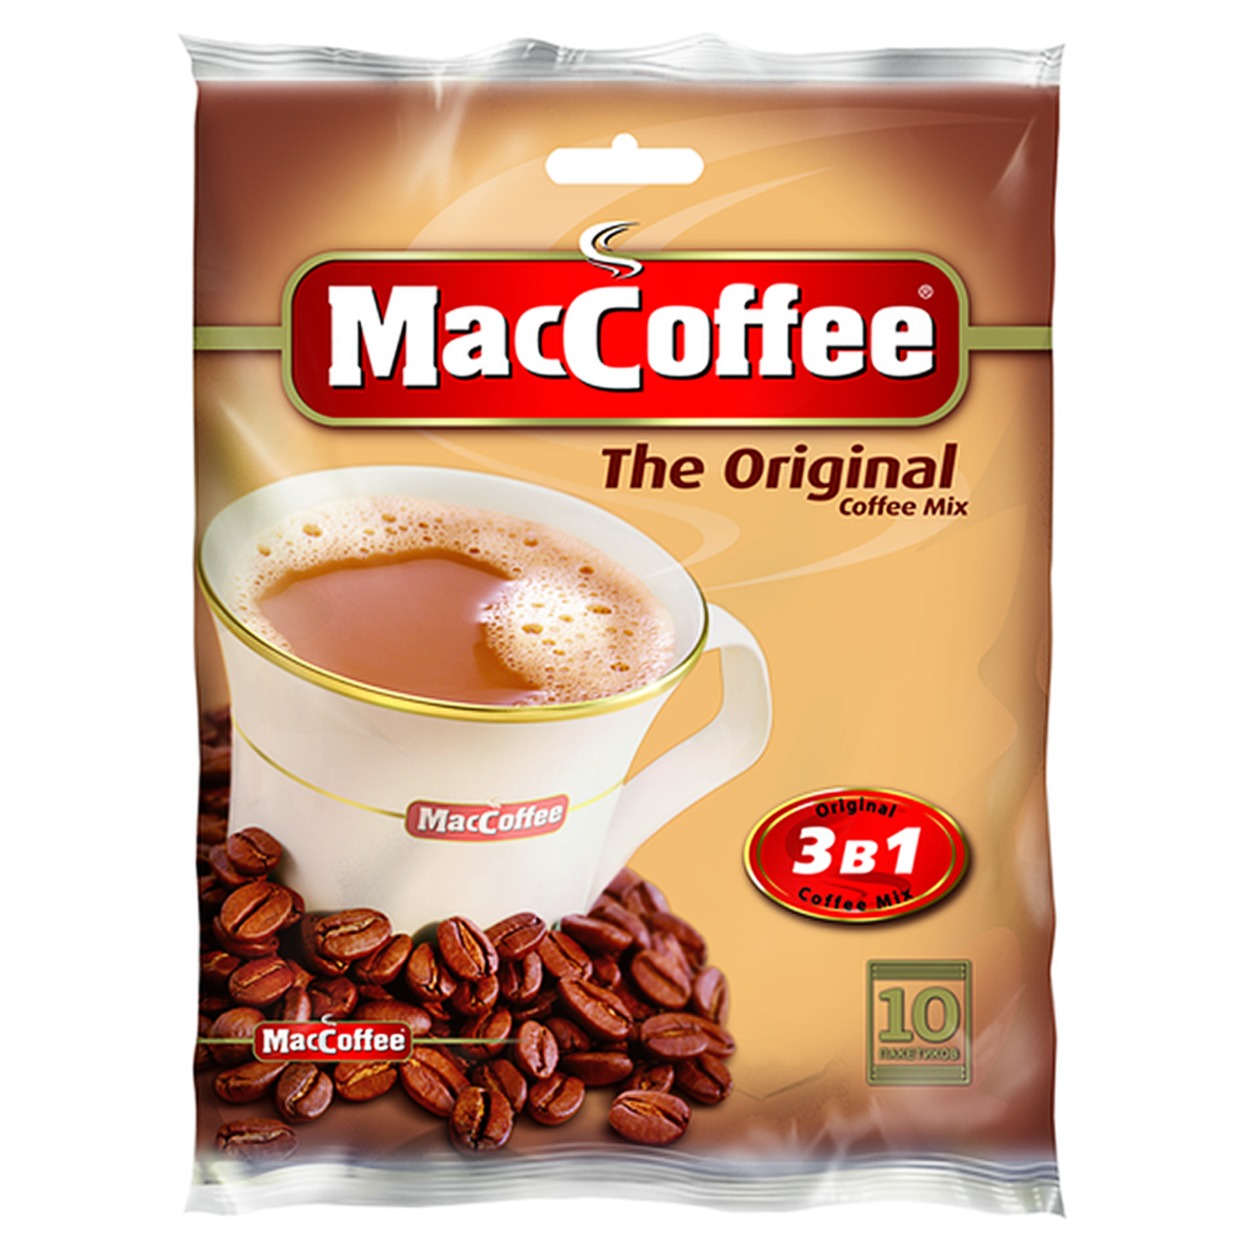 Напиток кофейный MacCoffee Original 3в1 10пак*20г по акции в Пятерочке